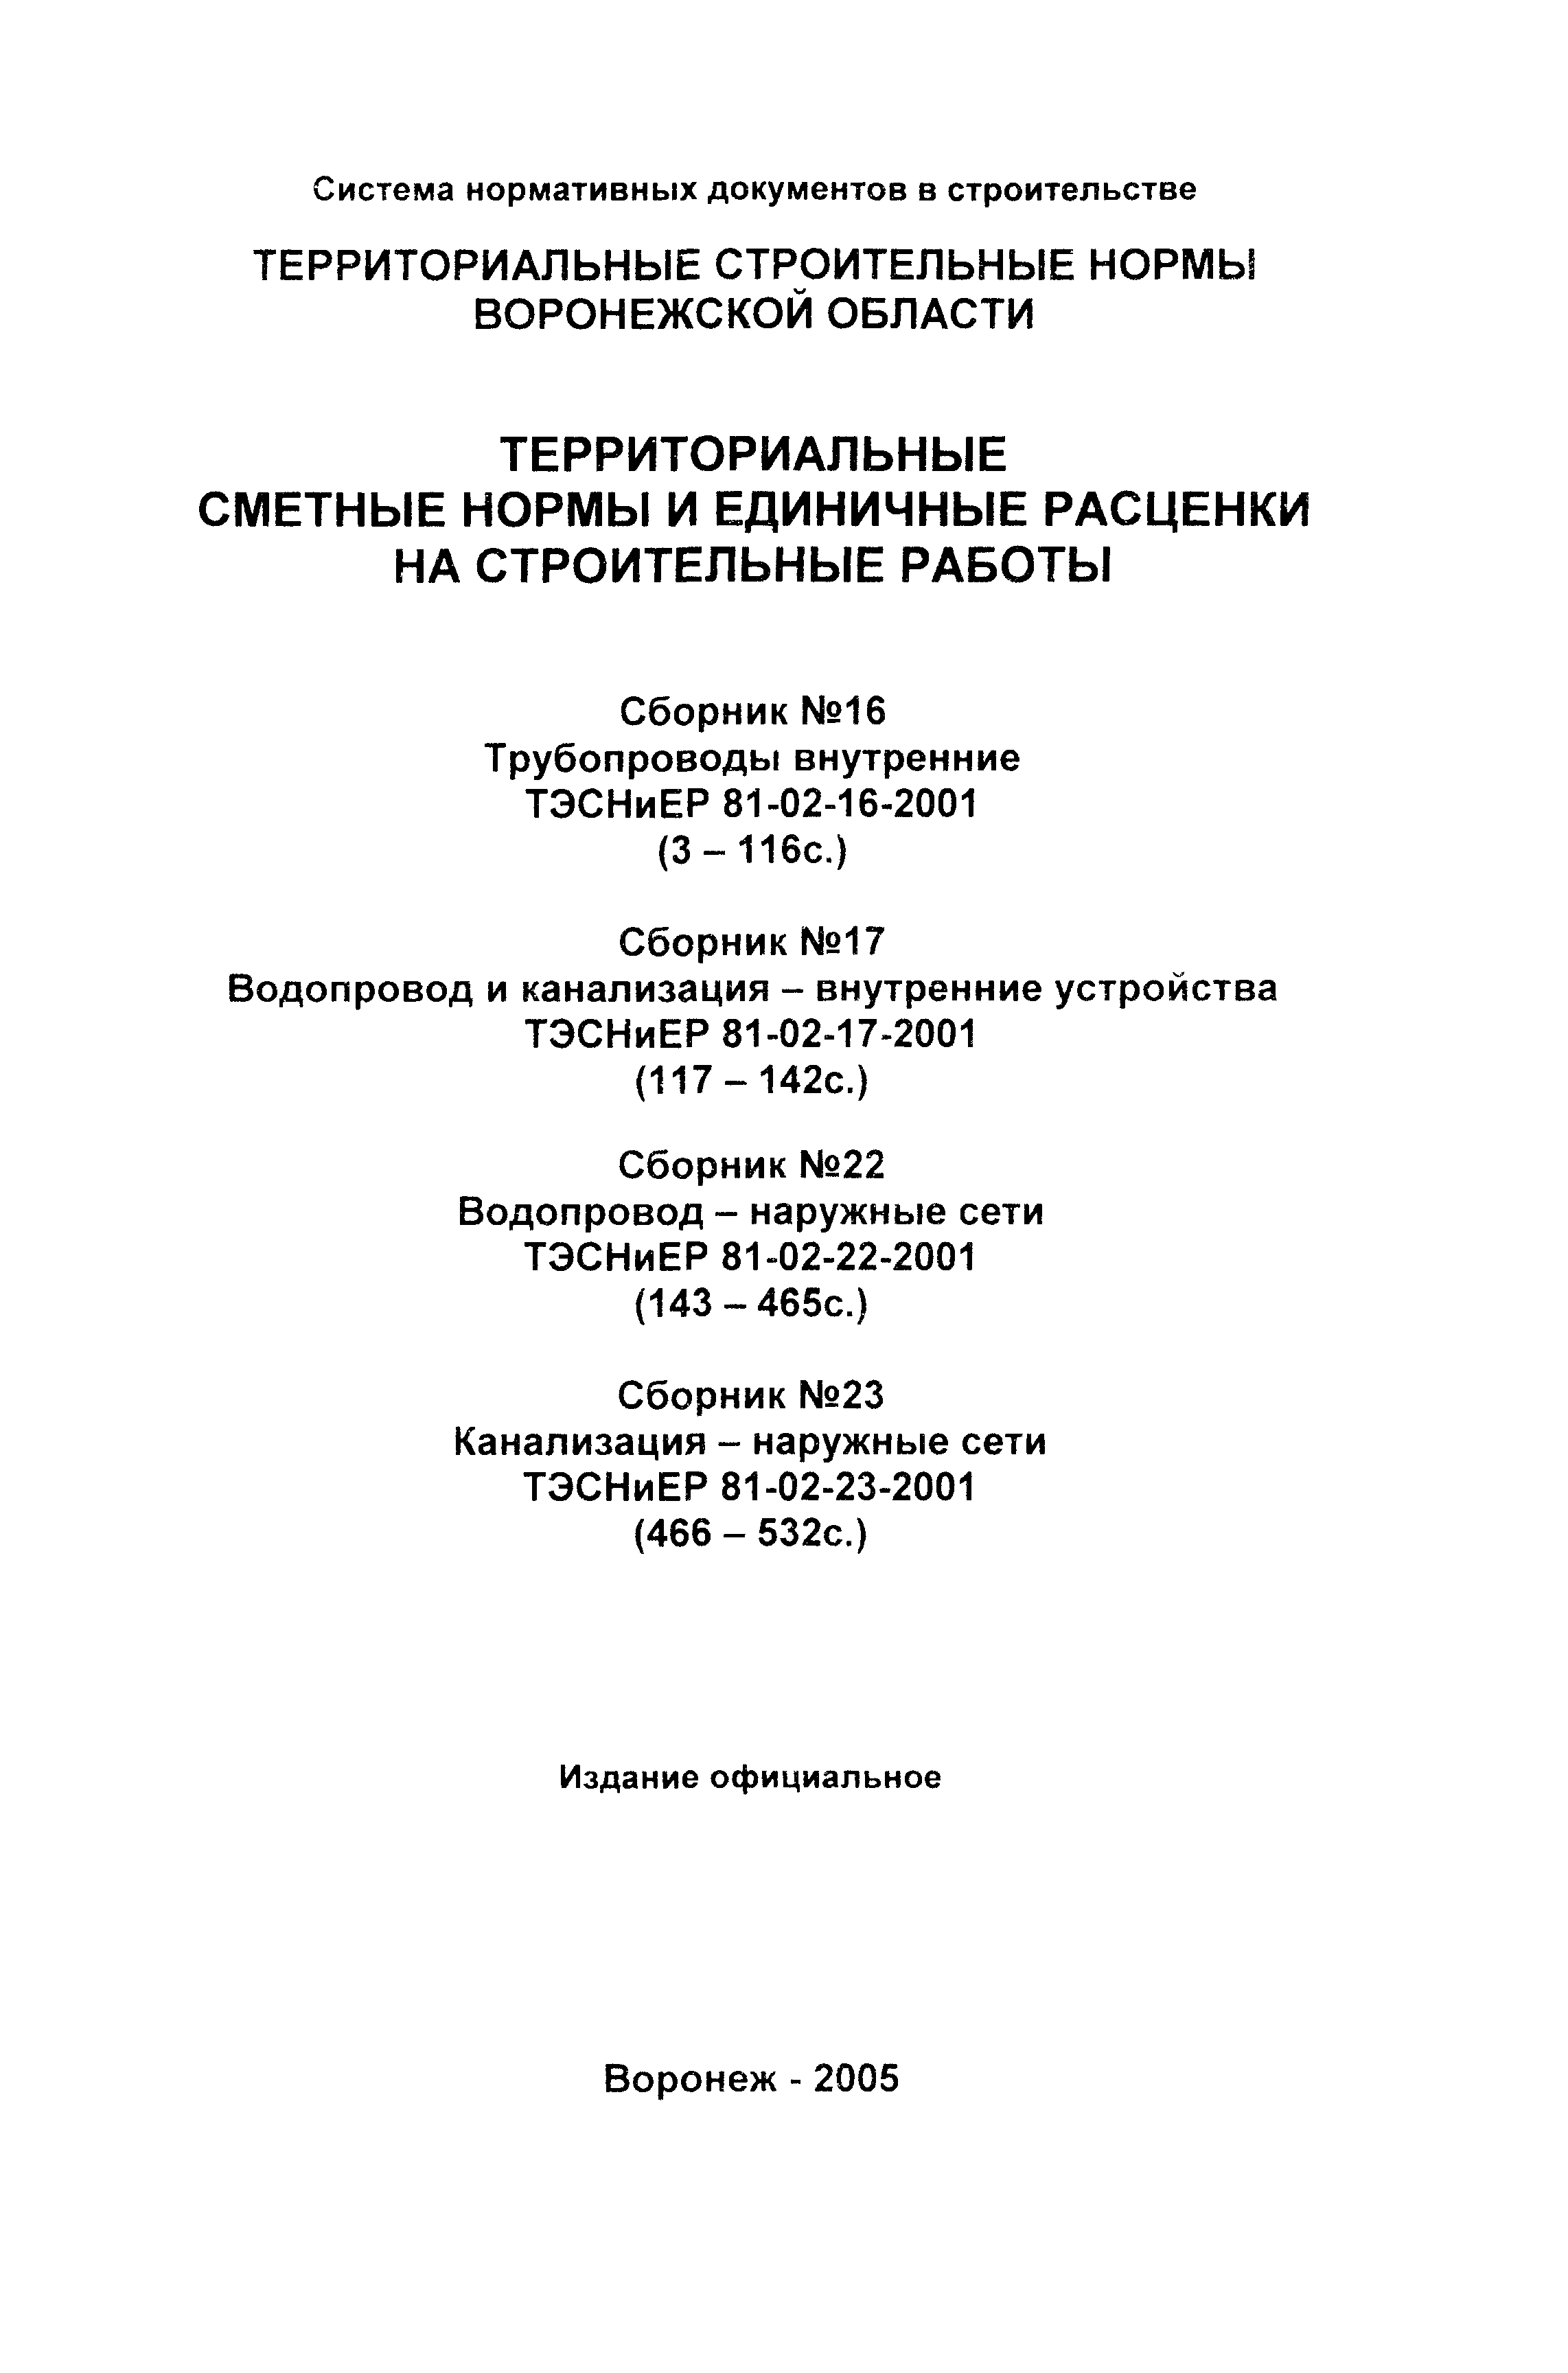 ТЭСНиЕР Воронежская область 81-02-17-2001